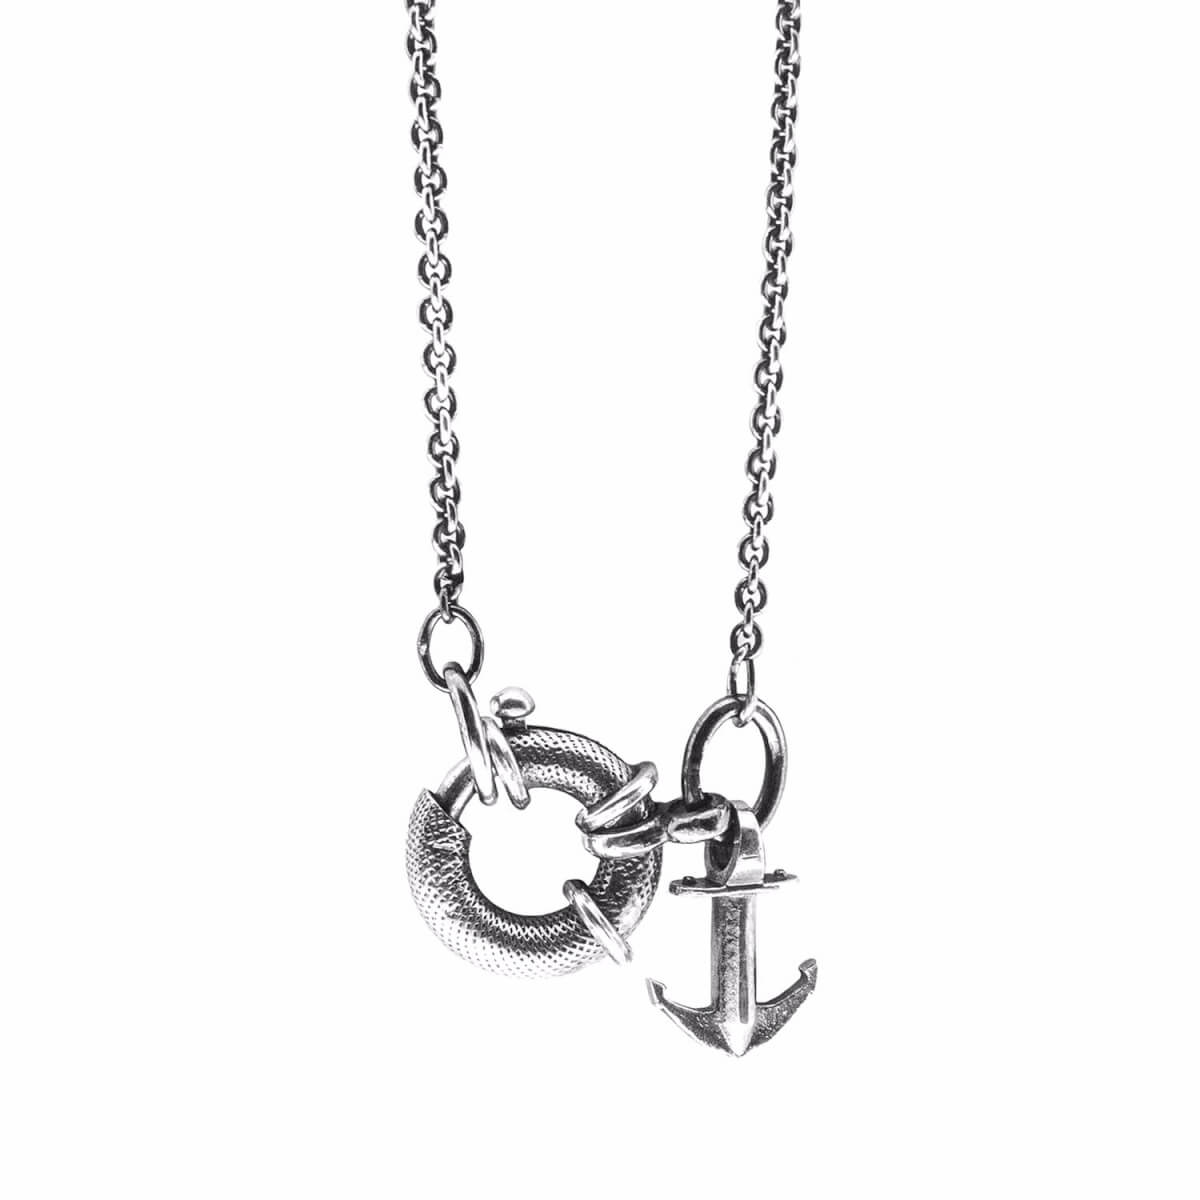 Men's Clyde Anchor Signature Silver Necklace Pendant ANCHOR & CREW